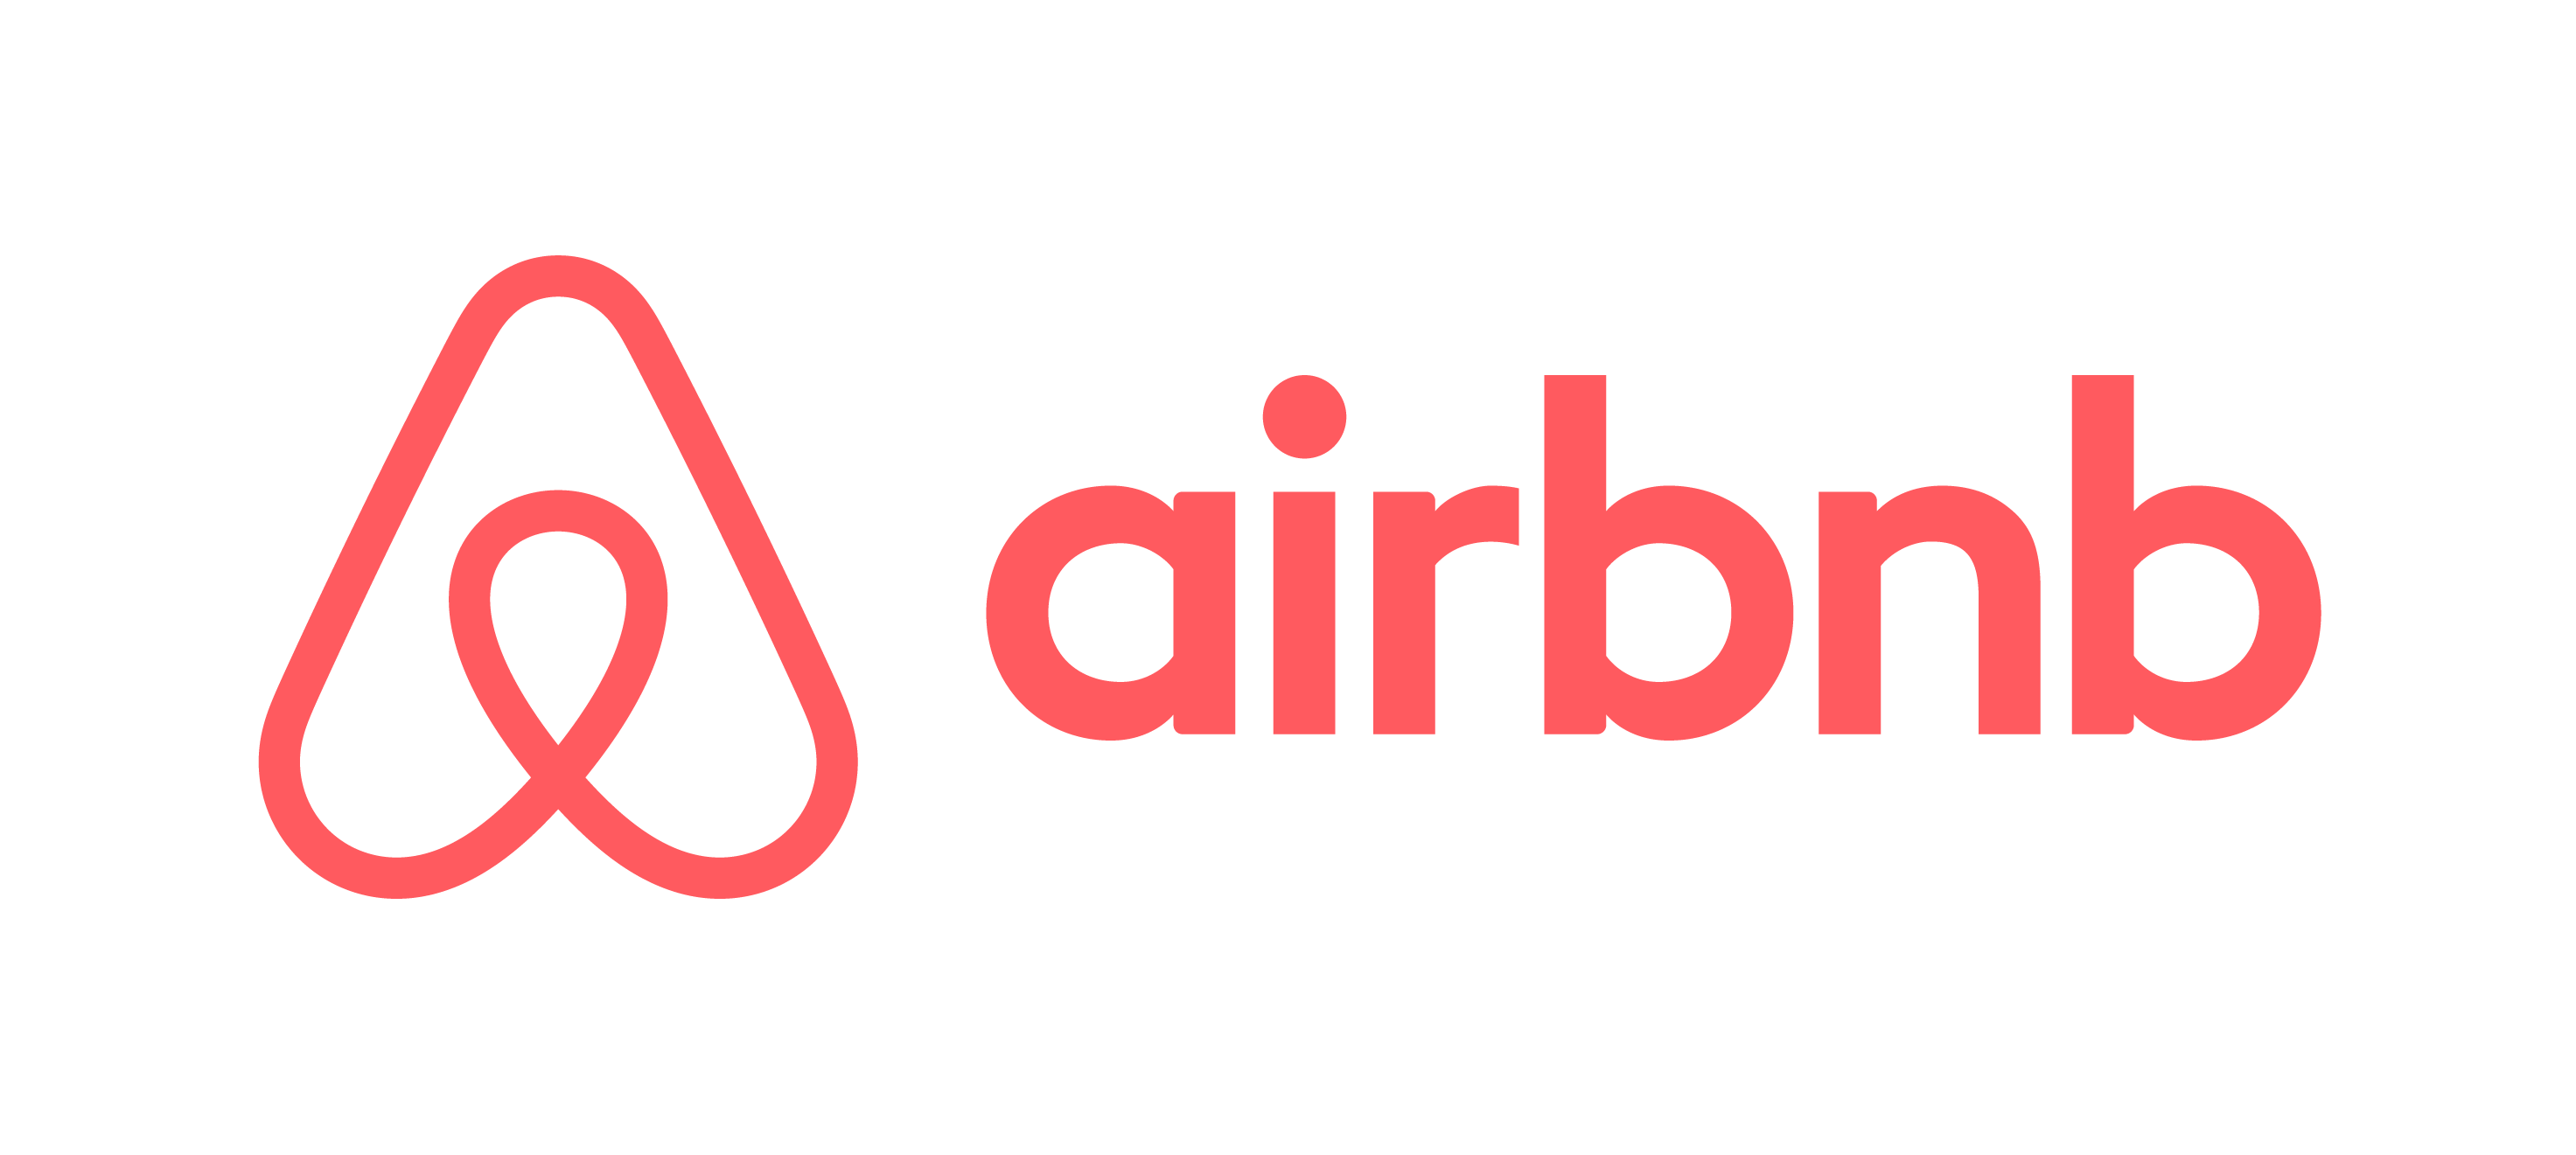 AIR BnB logo